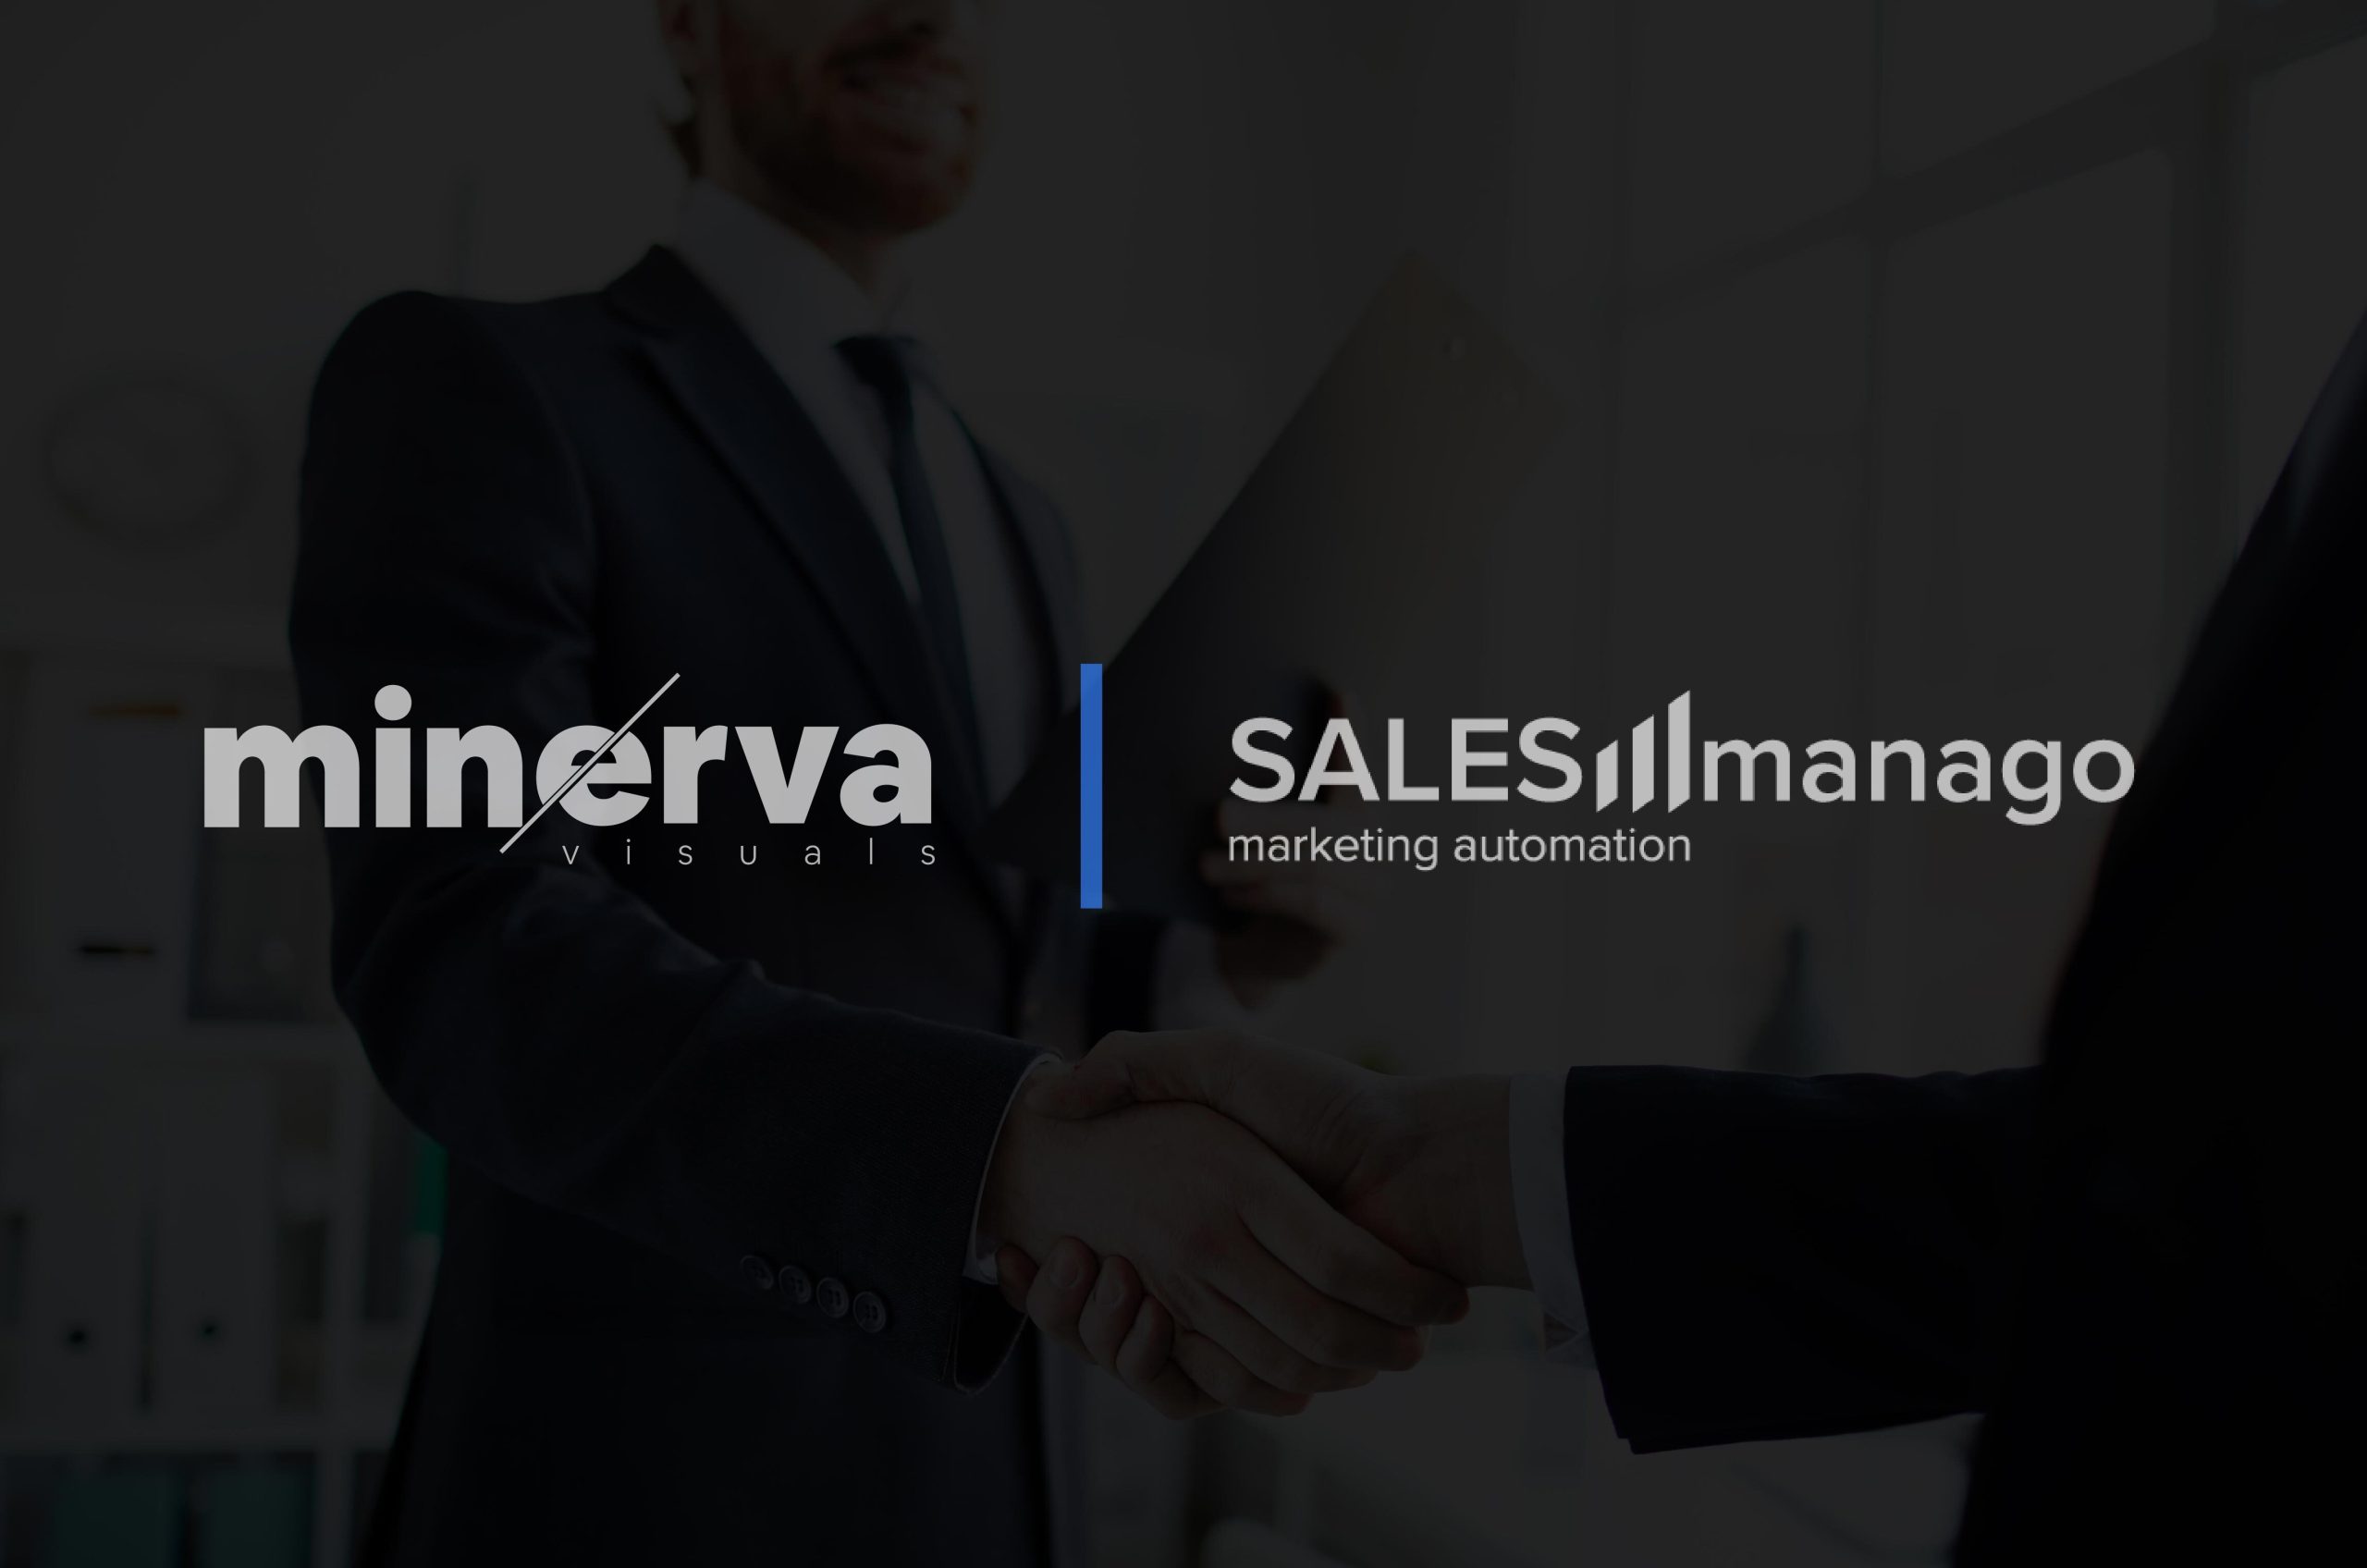 Announcing partnership: Minerva Visuals + SALESmanago